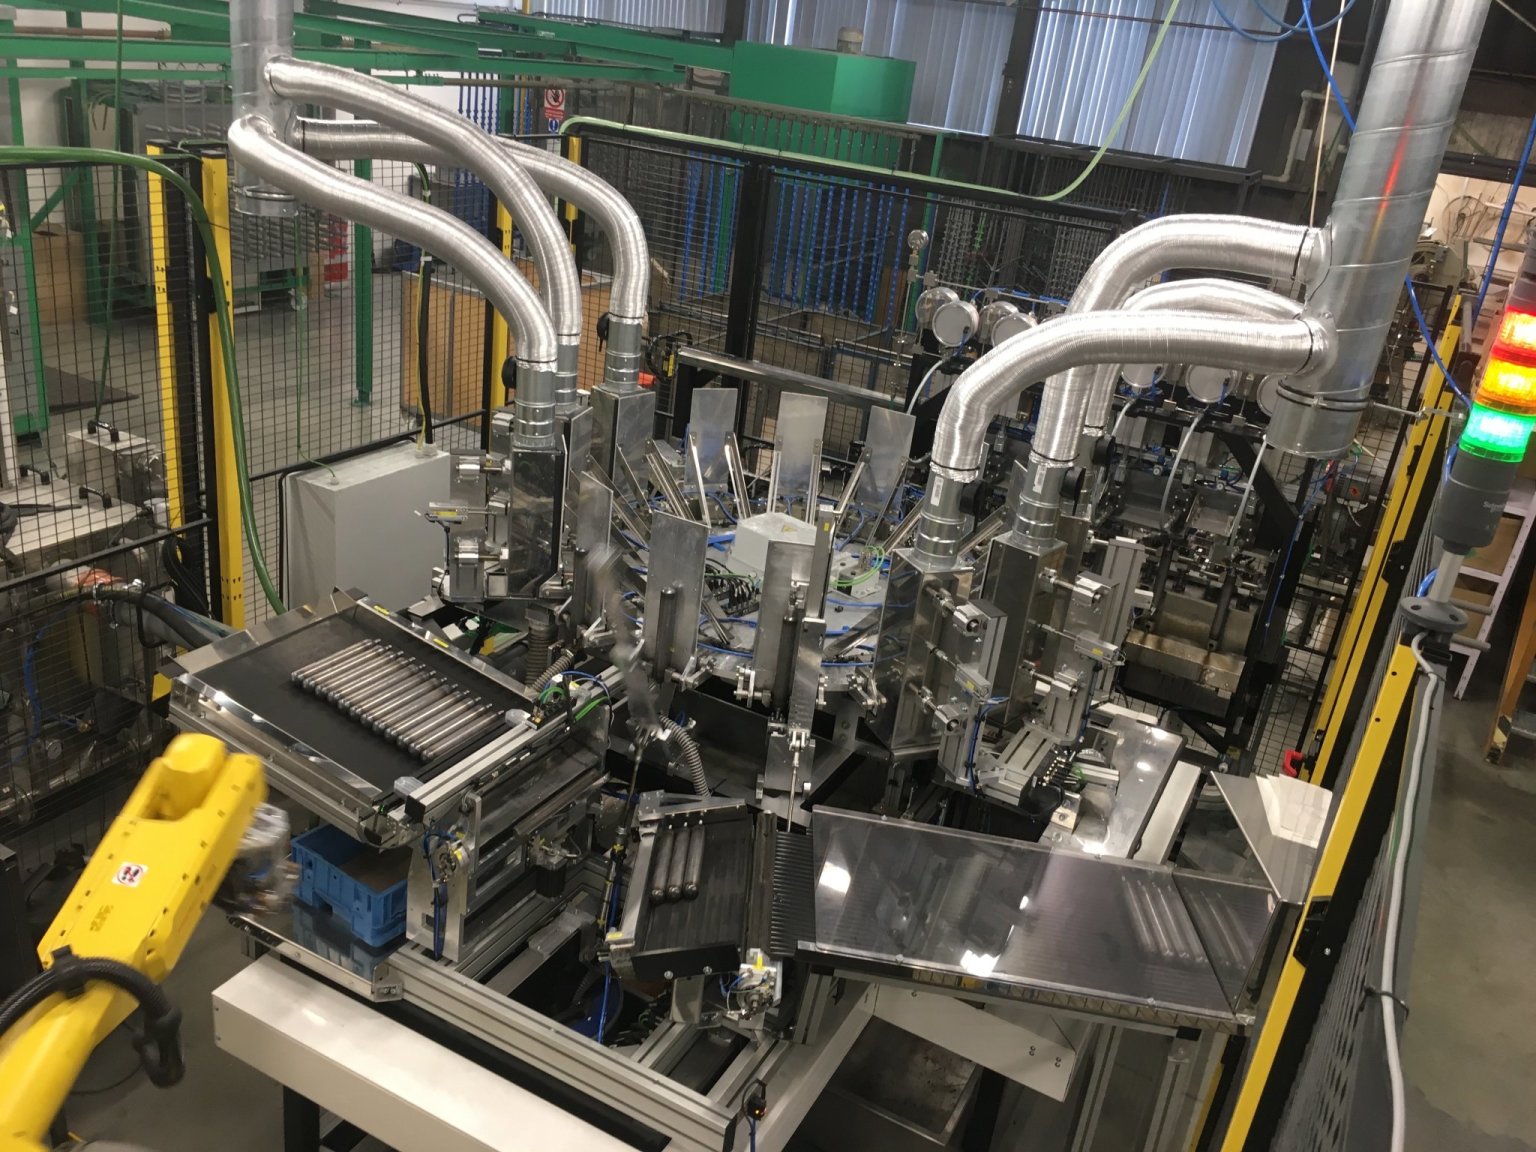 Konstruktéøi z Acam Solution vyvinuli napøíklad robotické pracovištì pro mytí a tlakovou zkoušku tlakových lahví.